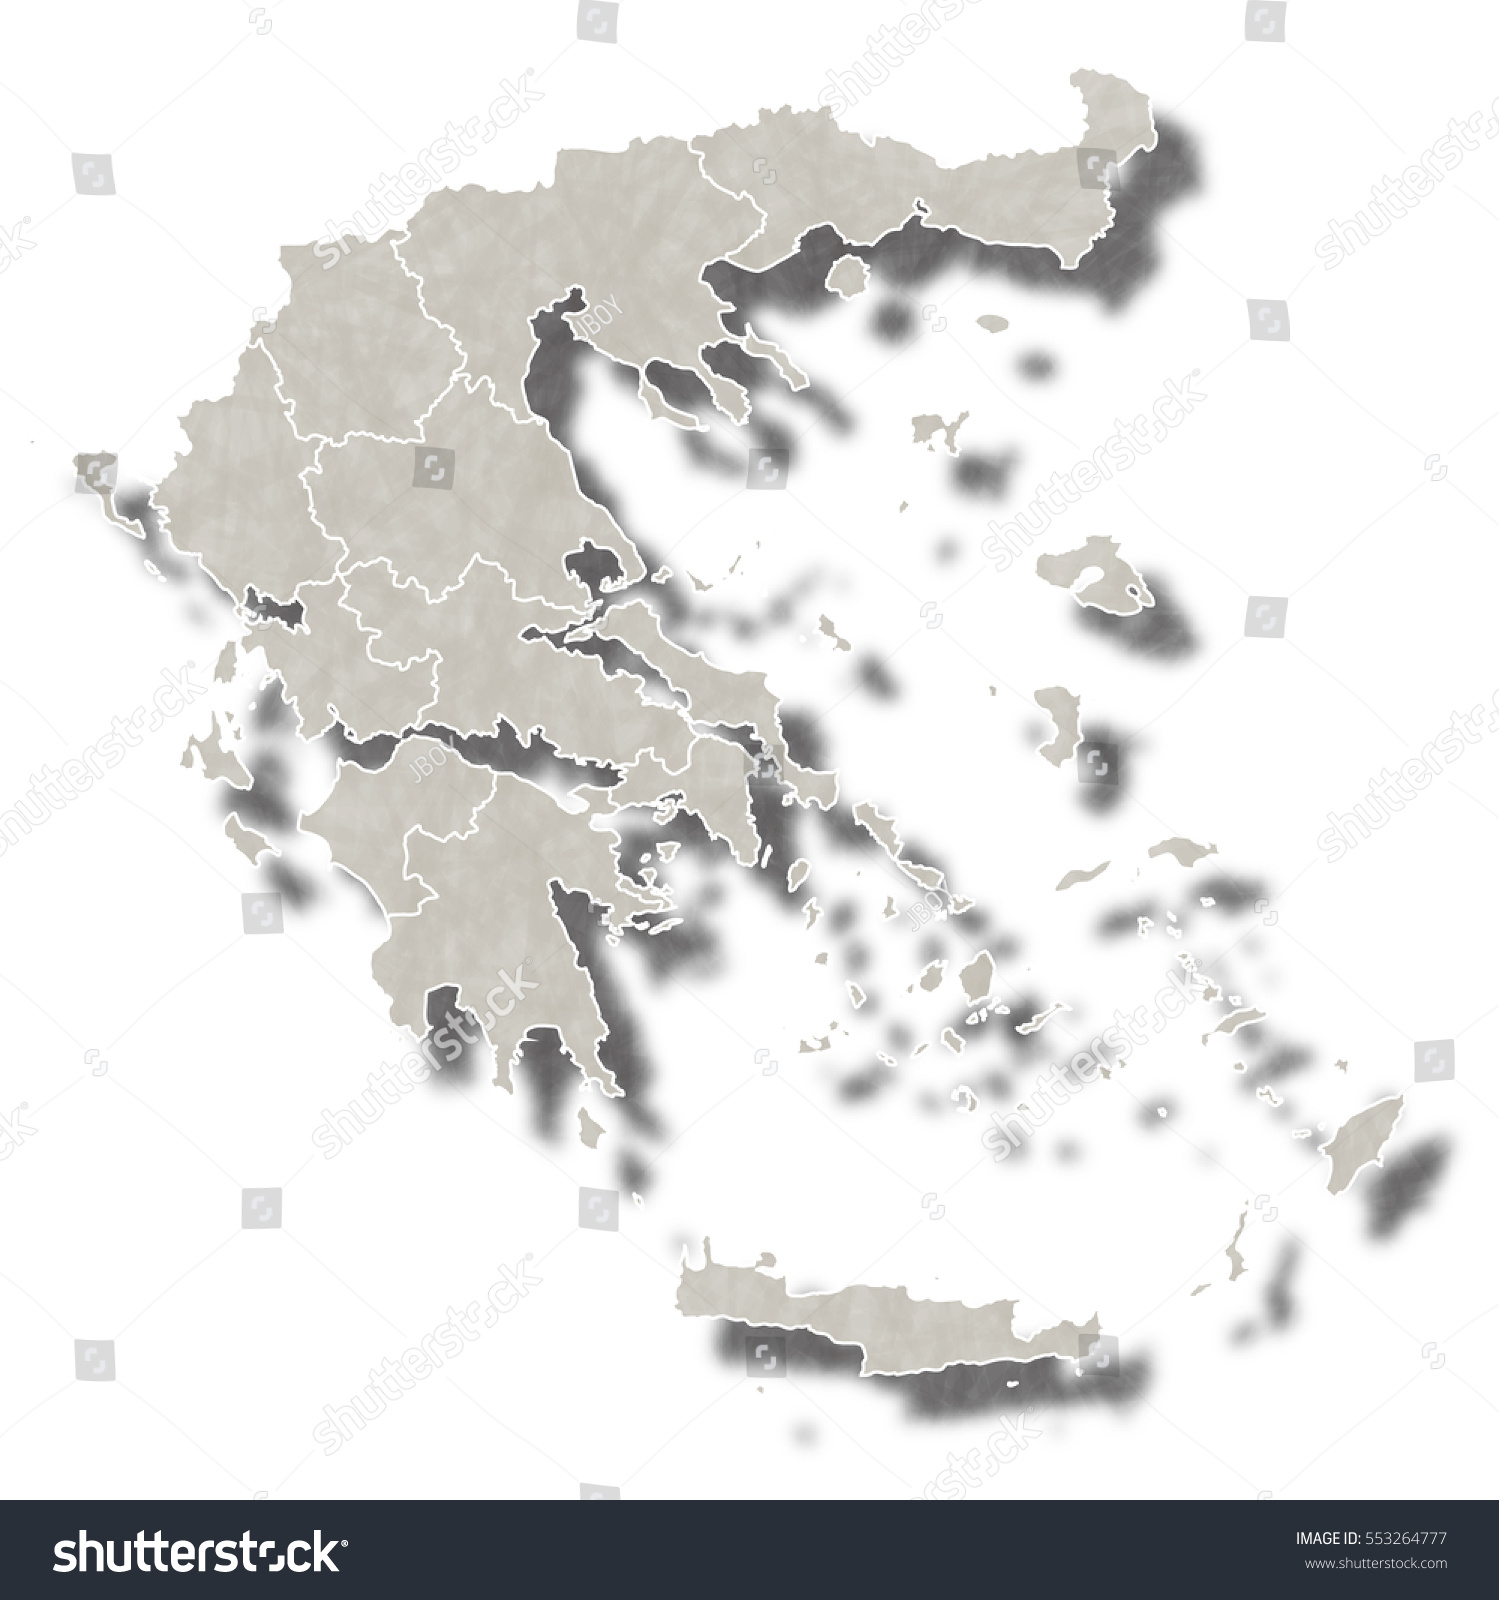 Stock Vector Greece Map City Icon 553264777 